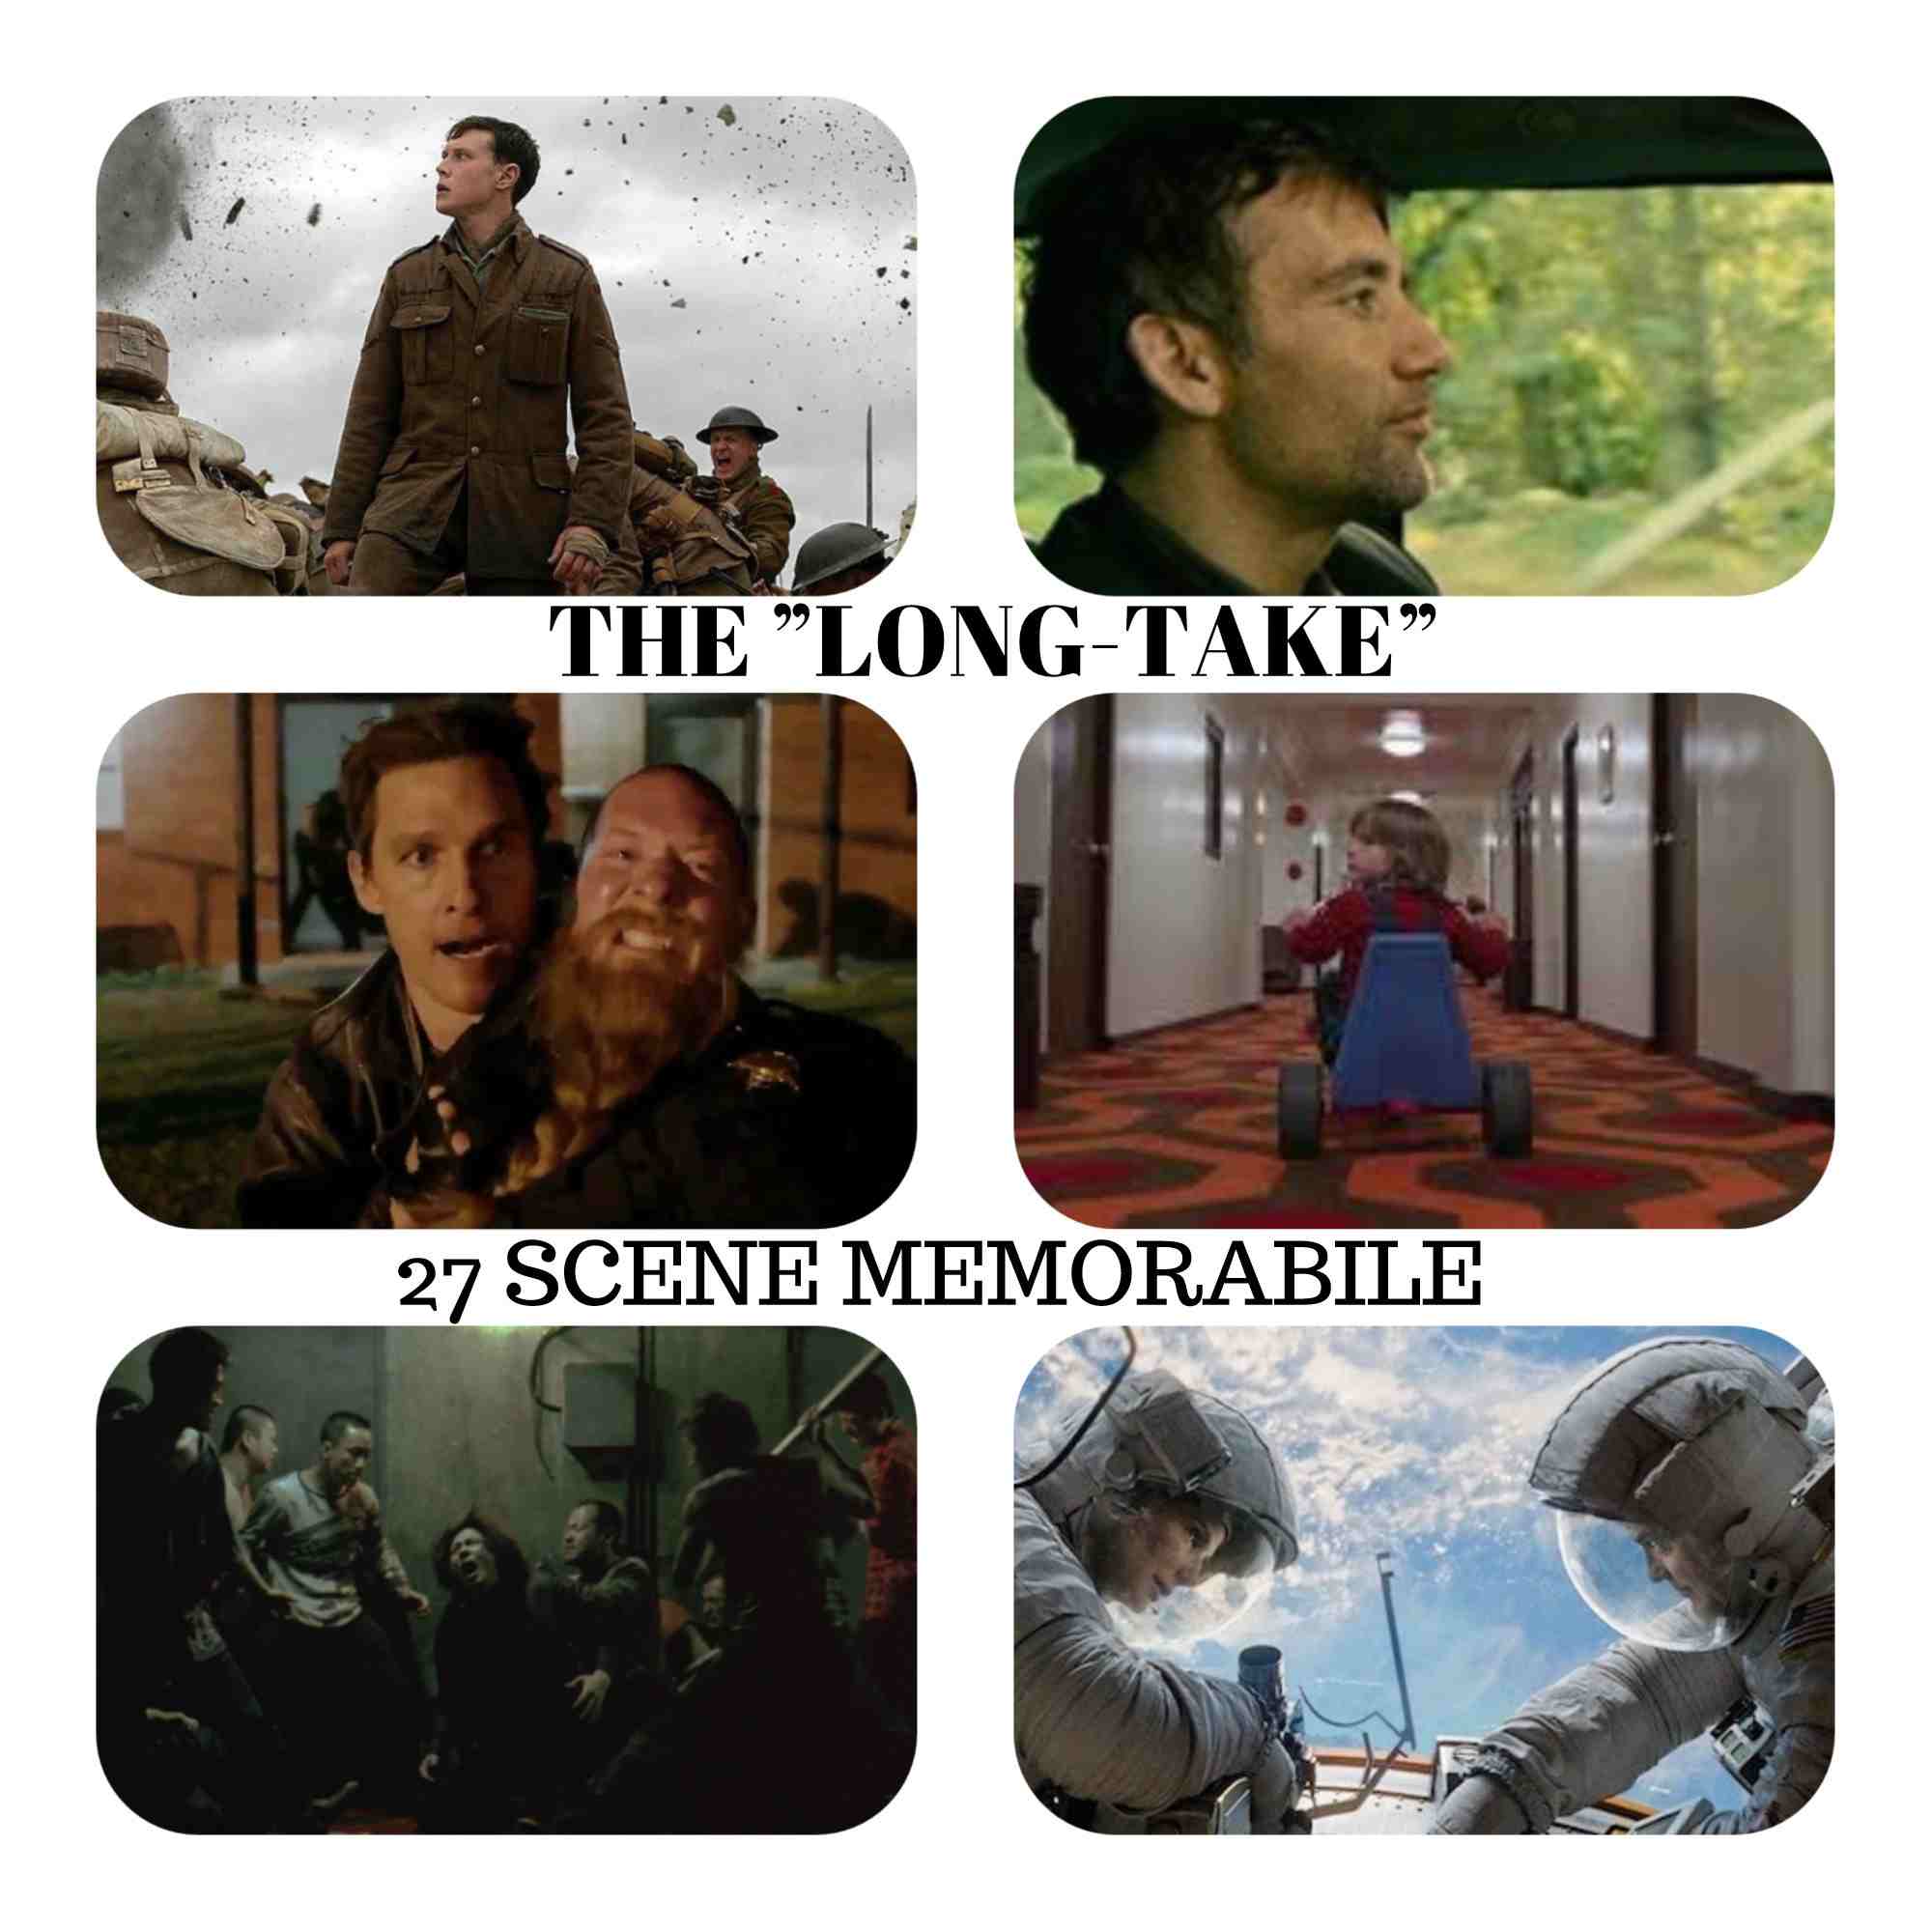 The ”Long-Take” - 27 scene memorabile